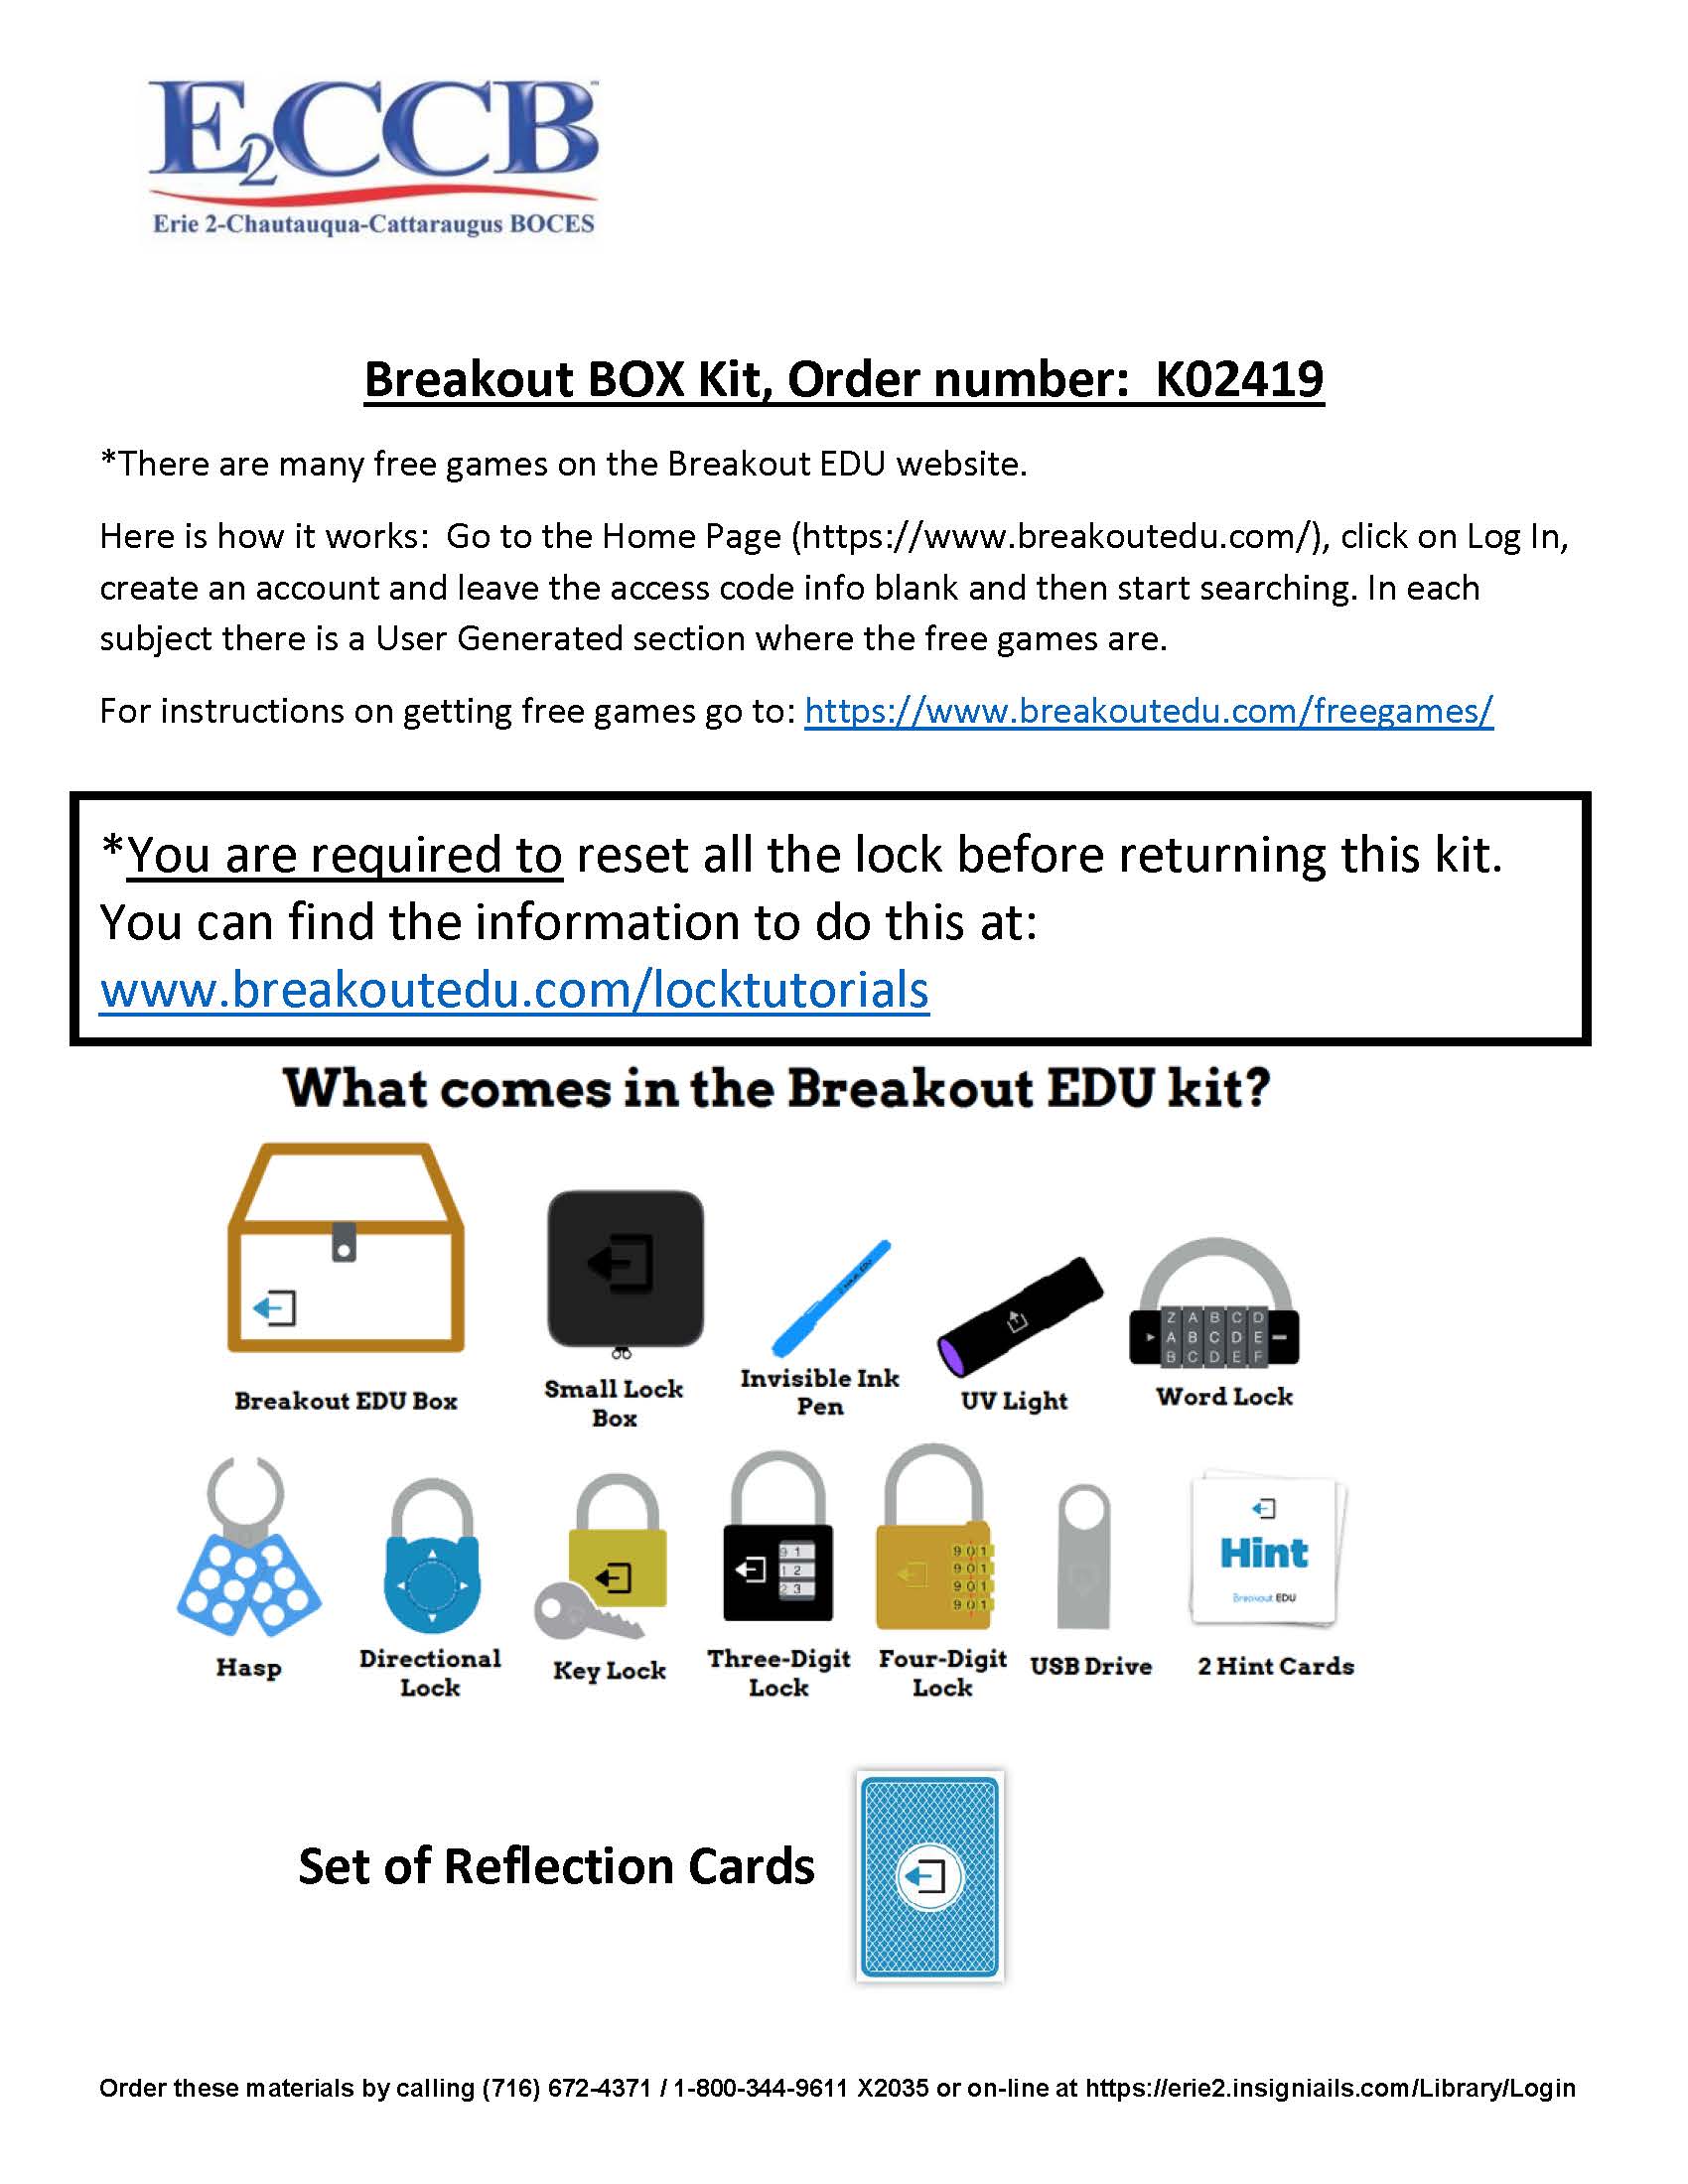 Breakout EDU Box